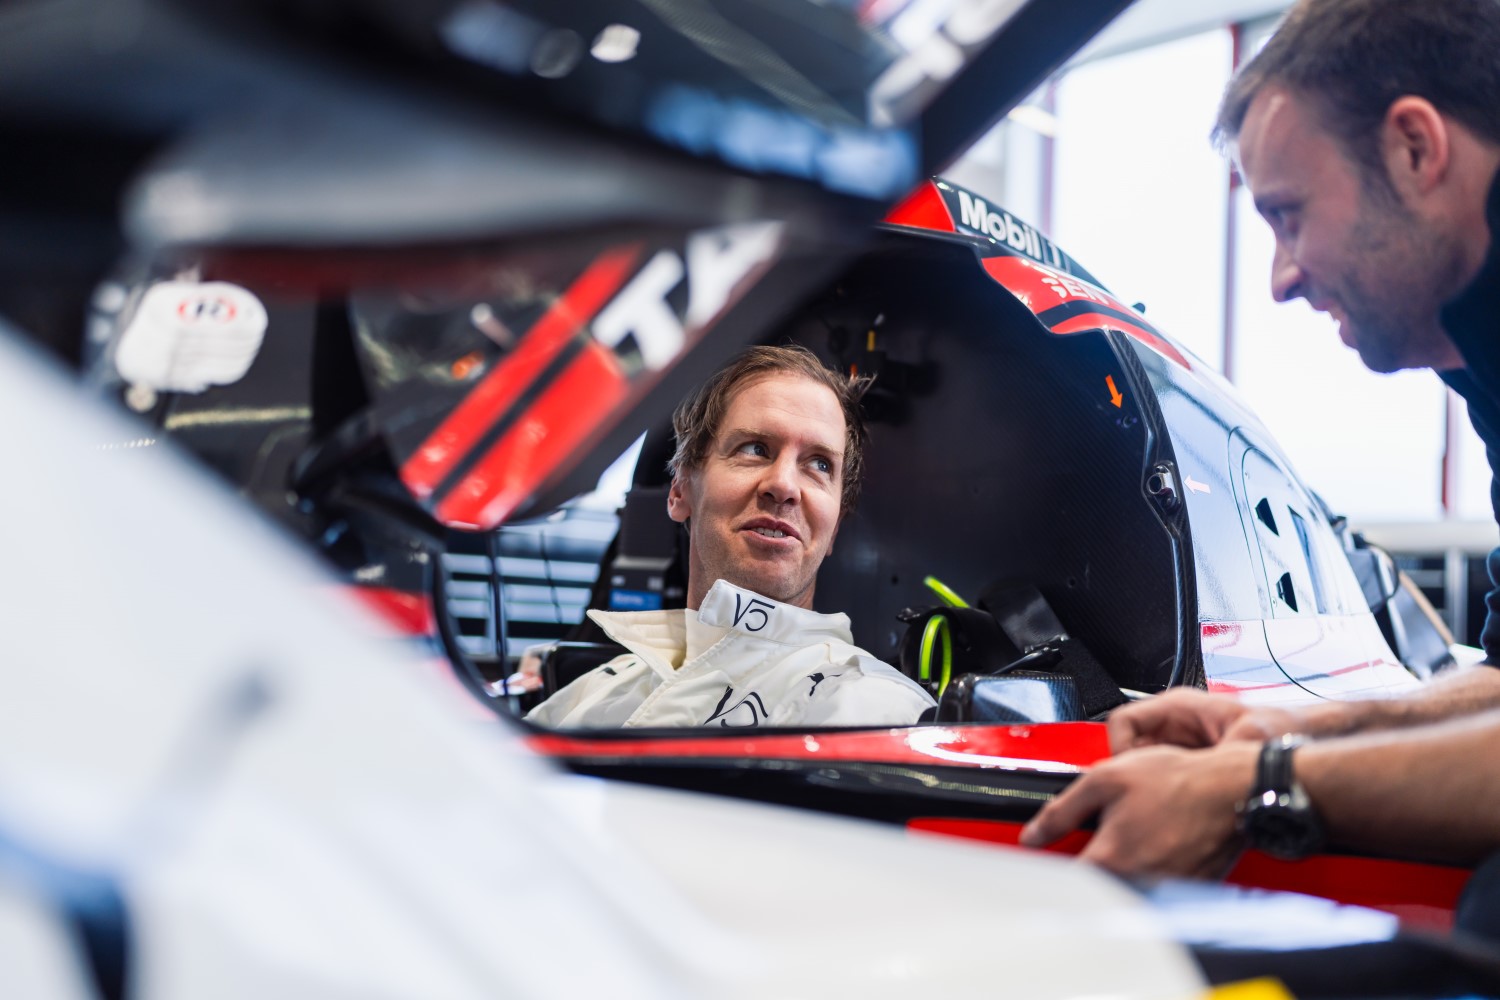 Porsche 963 Seat fit for Sebastian Vettel